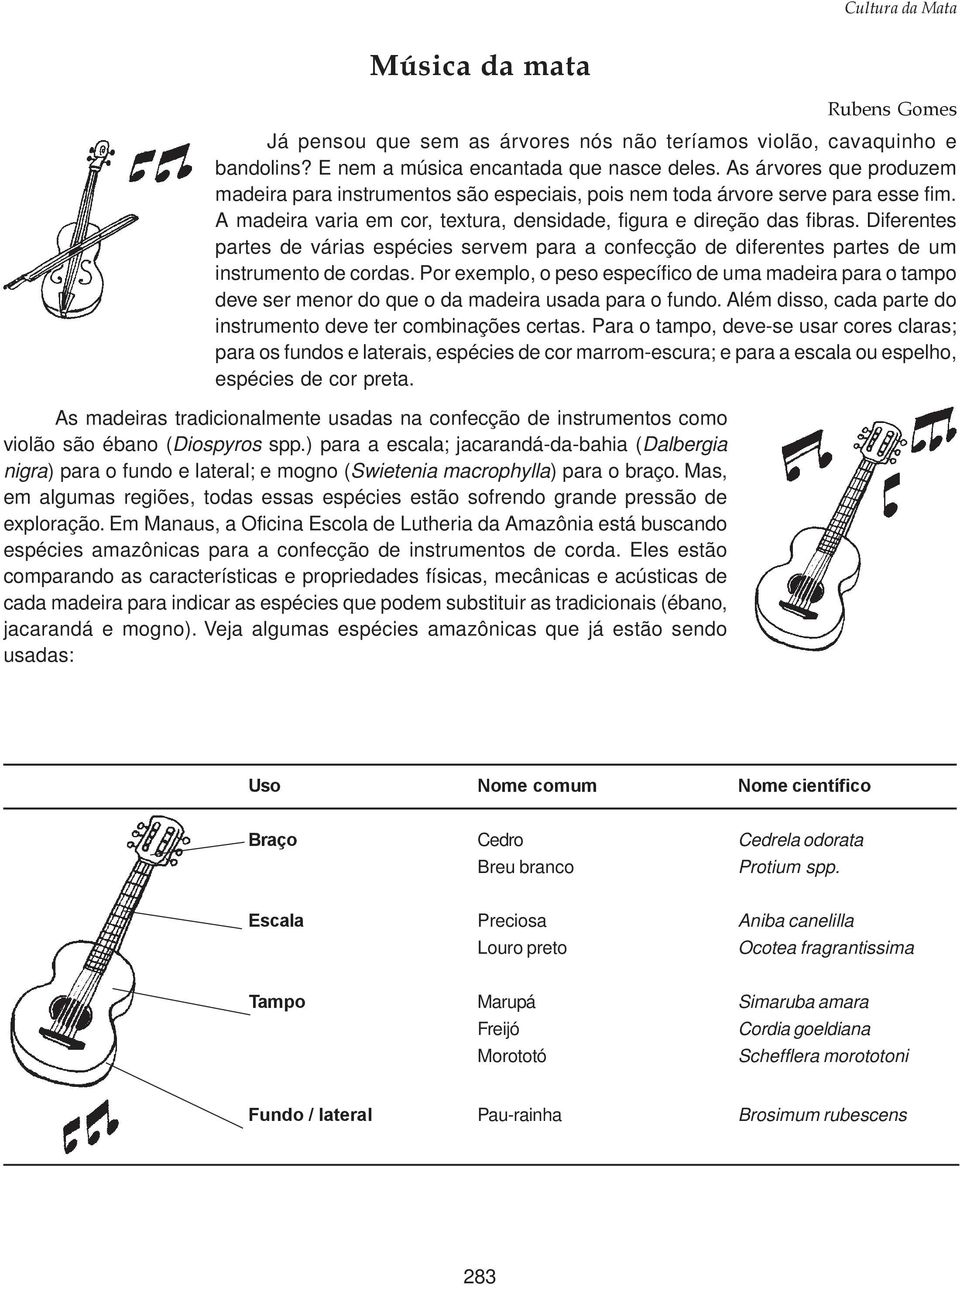 Diferentes partes de várias espécies servem para a confecção de diferentes partes de um instrumento de cordas.